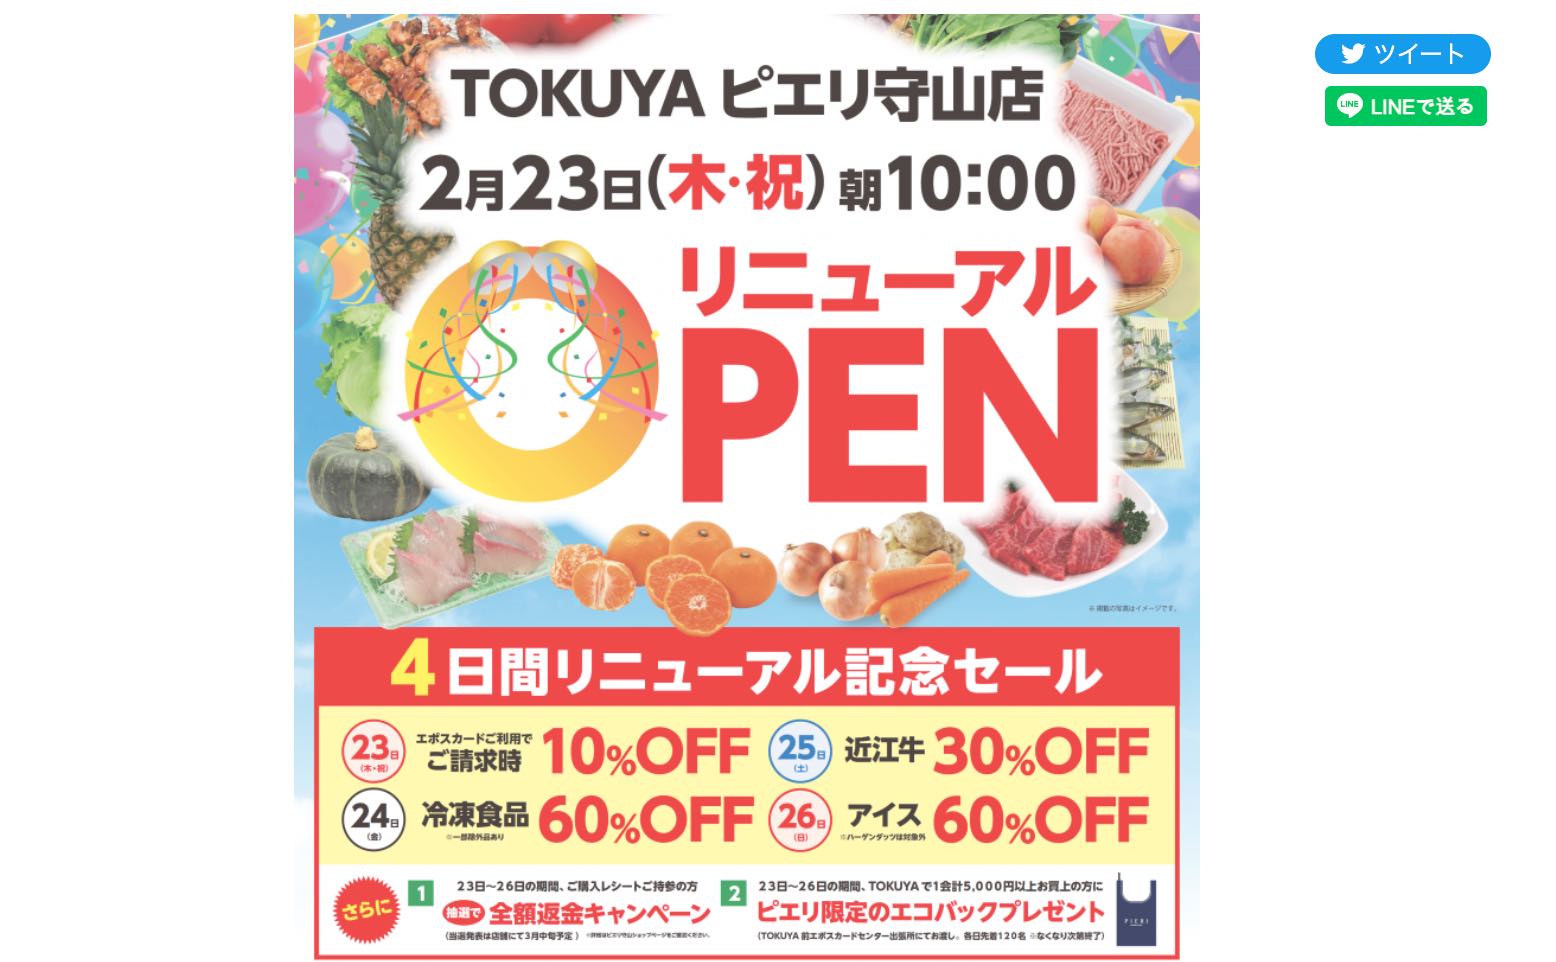 2023年2月23日、「生鮮食品館TOKUYAピエリ守山店」がリニューアルオープンするみたい。